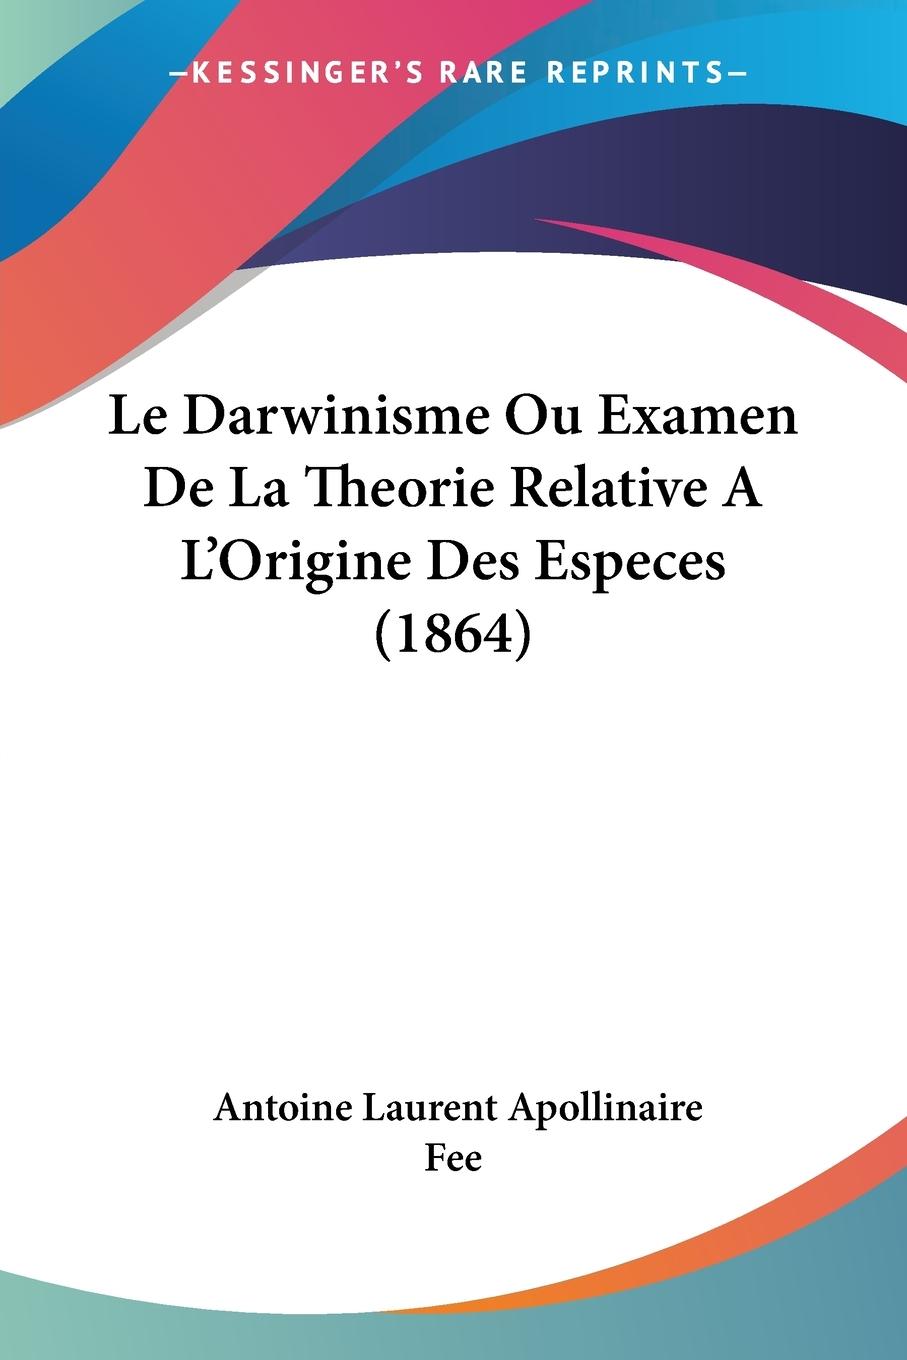 Le Darwinisme Ou Examen De La Theorie Relative A L Origine Des Especes (1864) - Fee, Antoine Laurent Apollinaire